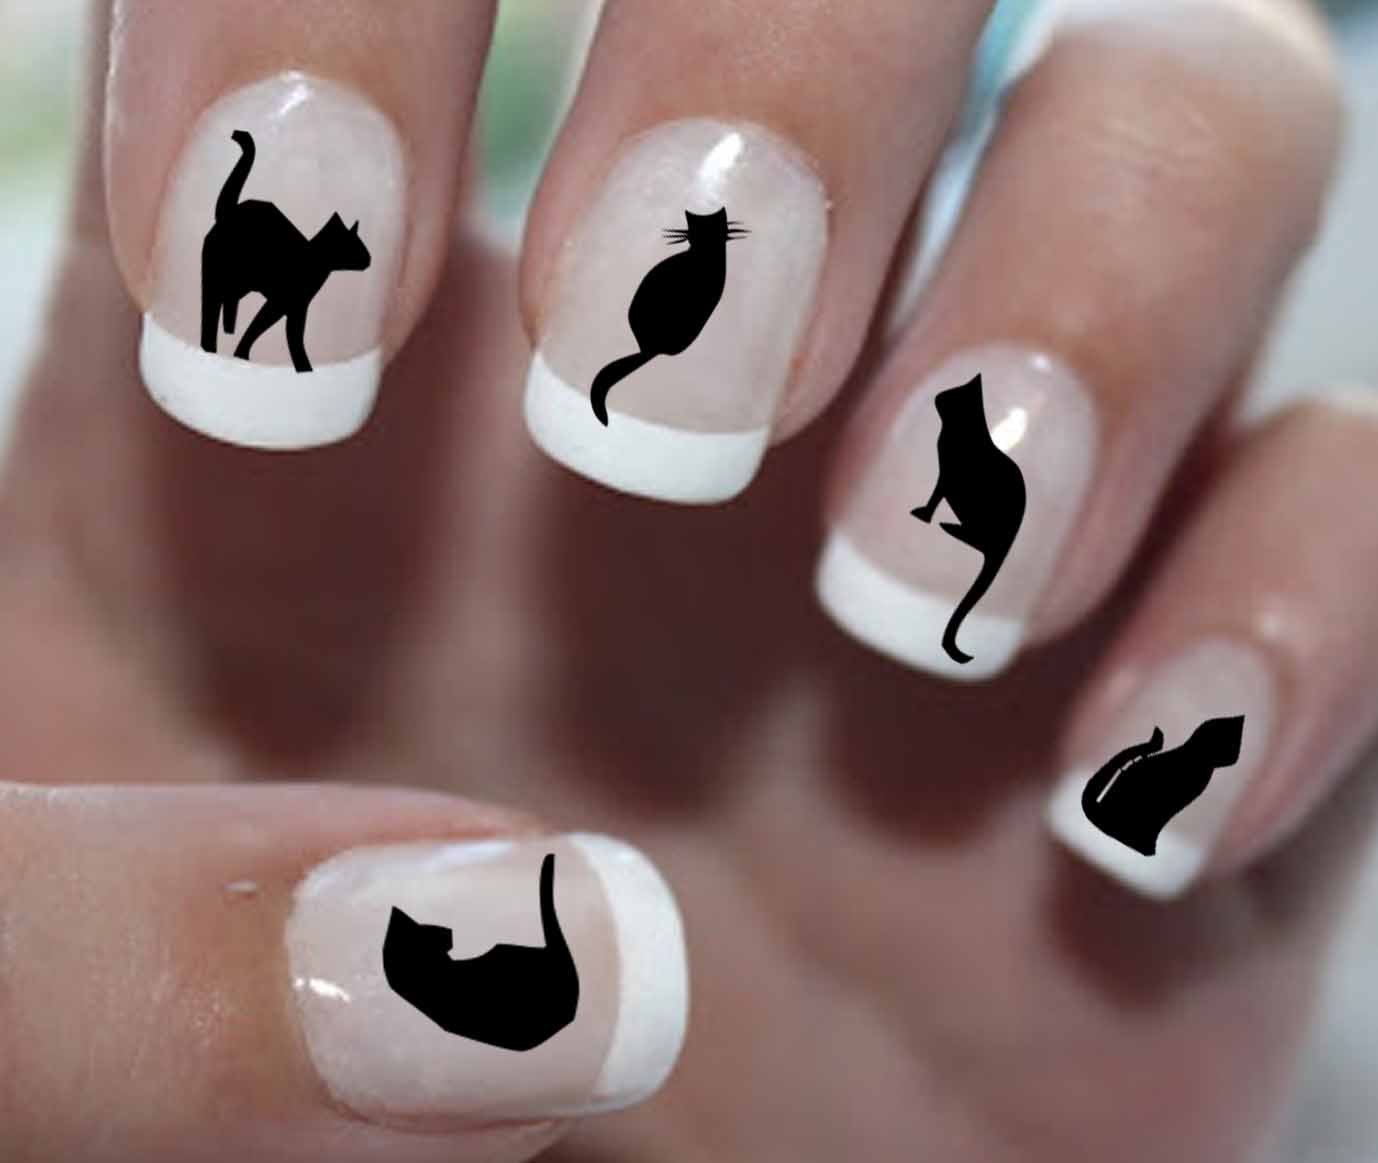 Ногти как у кошки. Маникюр с кошками. Маникюр с черной кошкой. Черная кошка на ногтях. Маникюр с кошками на короткие ногти.